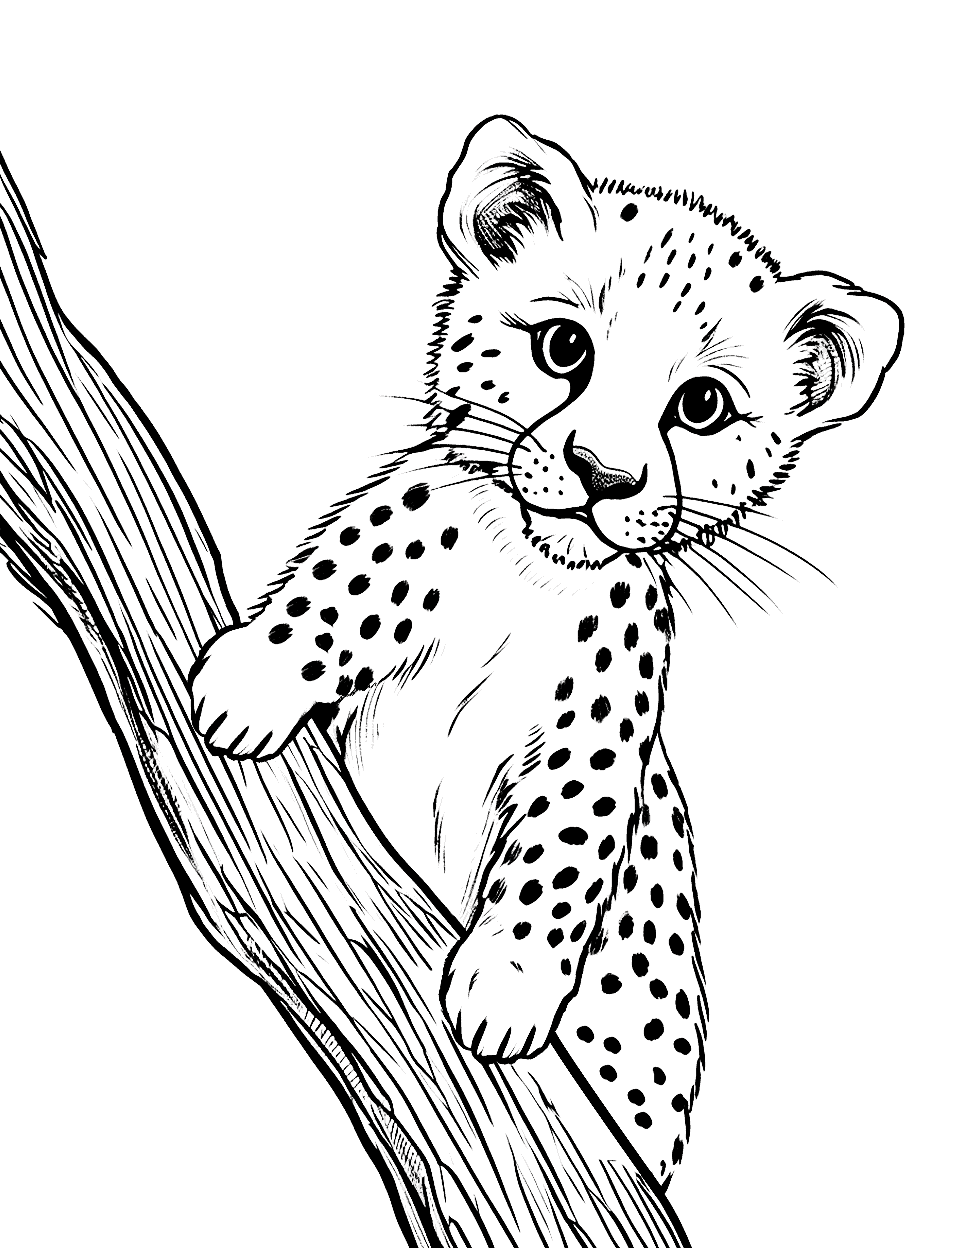 Baby Cheetah Playing Coloring Page - A playful cute baby cheetah batting at a small branch.